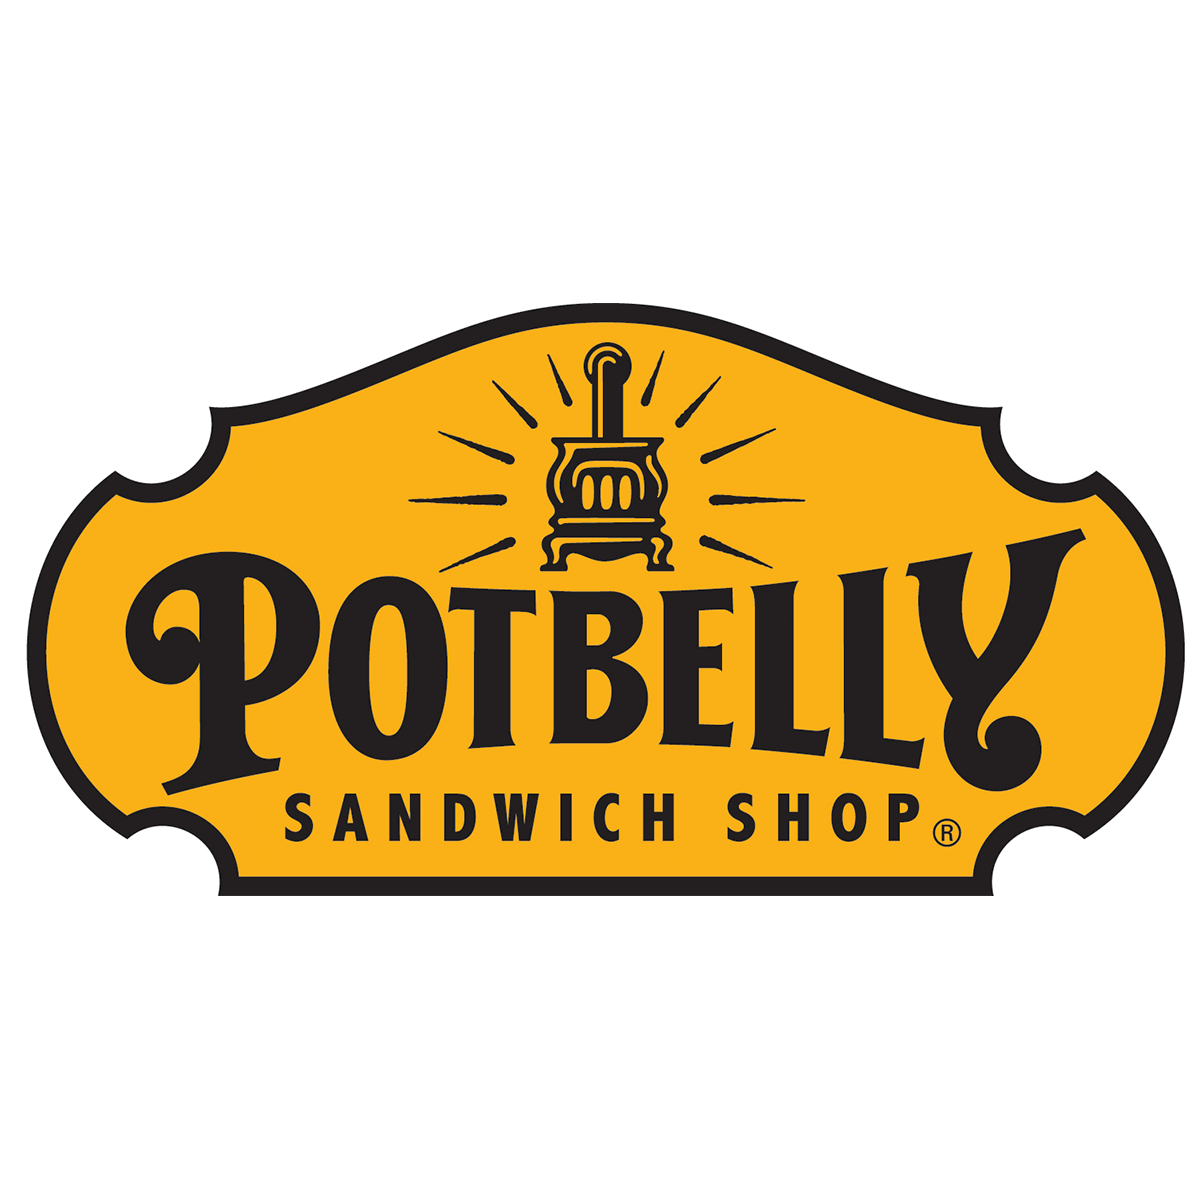 POTBELLEY SANDWICH SHOP